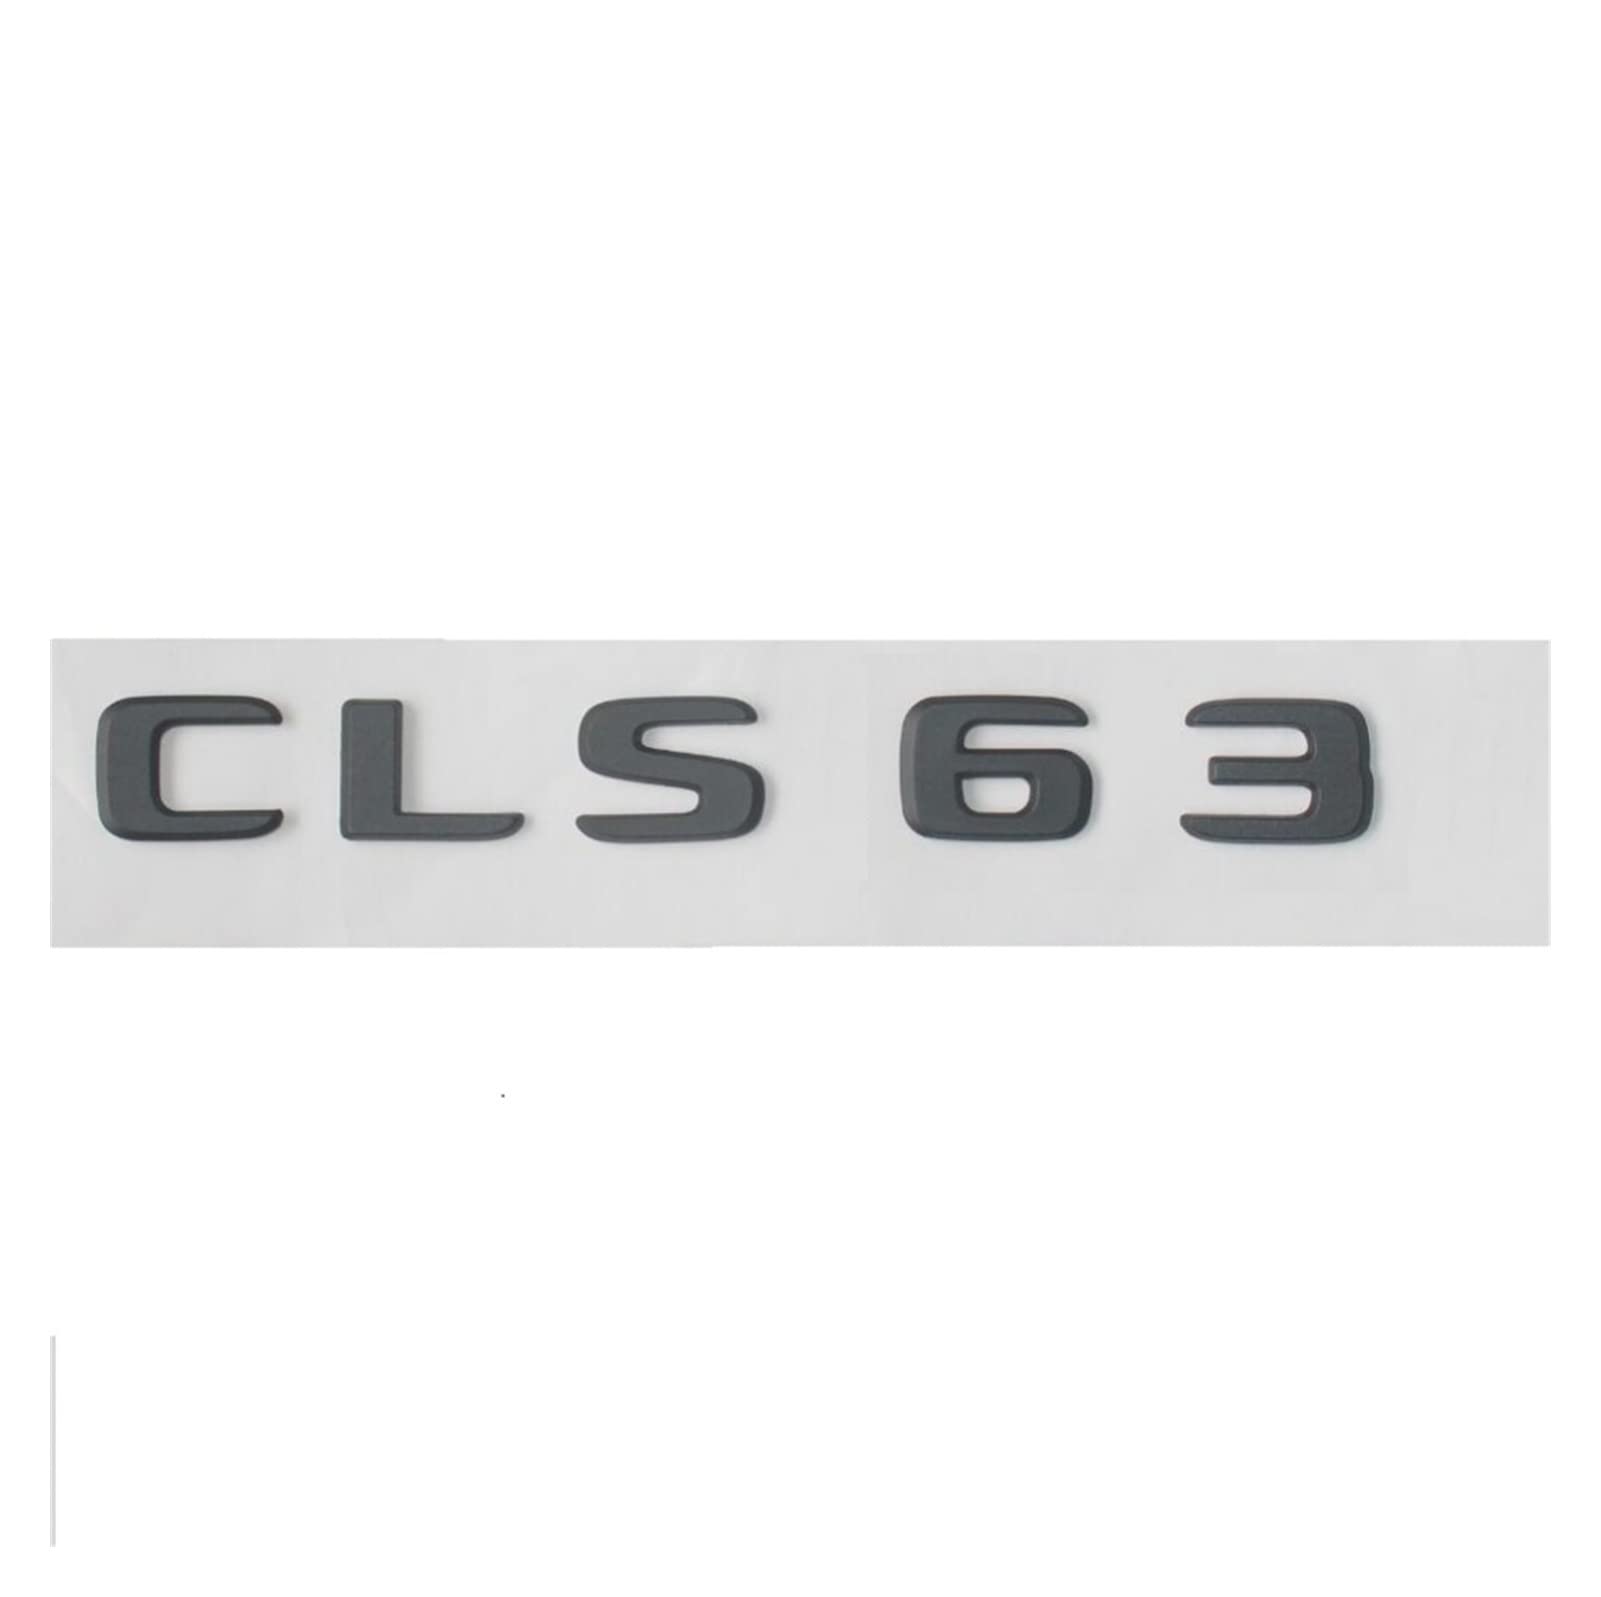 NEZIH Mattschwarze ABS-Buchstaben for den hinteren Kofferraum, Abzeichen, Embleme, Aufkleber, Aufkleber, kompatibel mit Mercedes Benz CLS-Klasse CLS63, kompatibel mit AMG 17–19 Emblem-Logo-Aufkleber von NEZIH